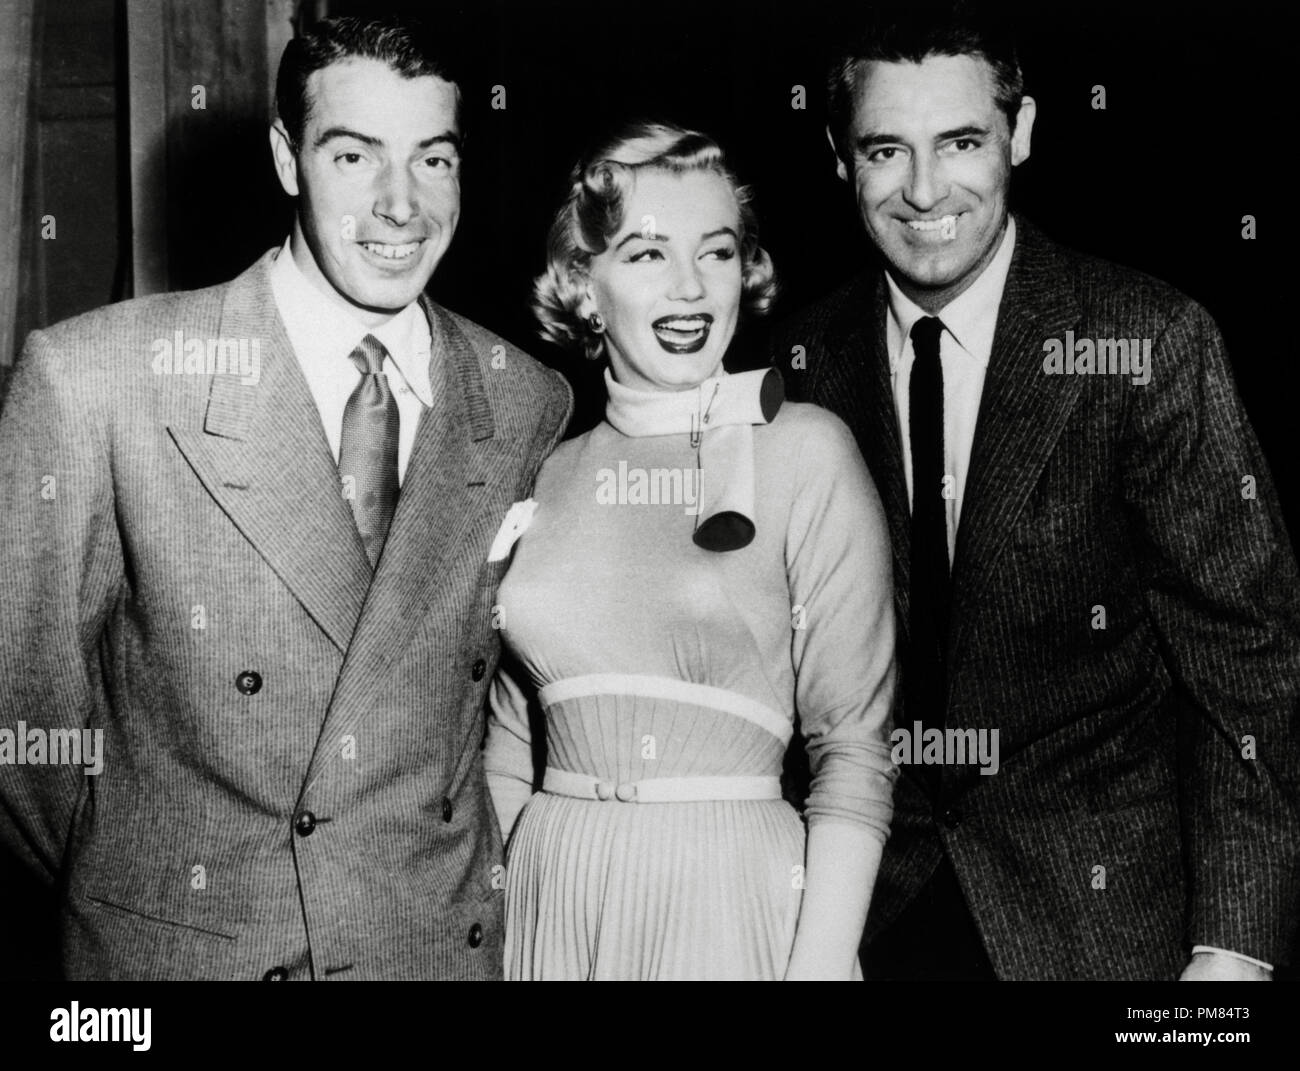 (Archivierung klassische Kino - Cary Grant Retrospektive) New York Yankees Baseballspieler Joe DiMaggio mit seiner Frau, Marilyn Monroe und Cary Grant bei der Herstellung von 'Monkey Business' Kino 1954 Verlage Collection File Reference # 31475 101 THA Stockfoto